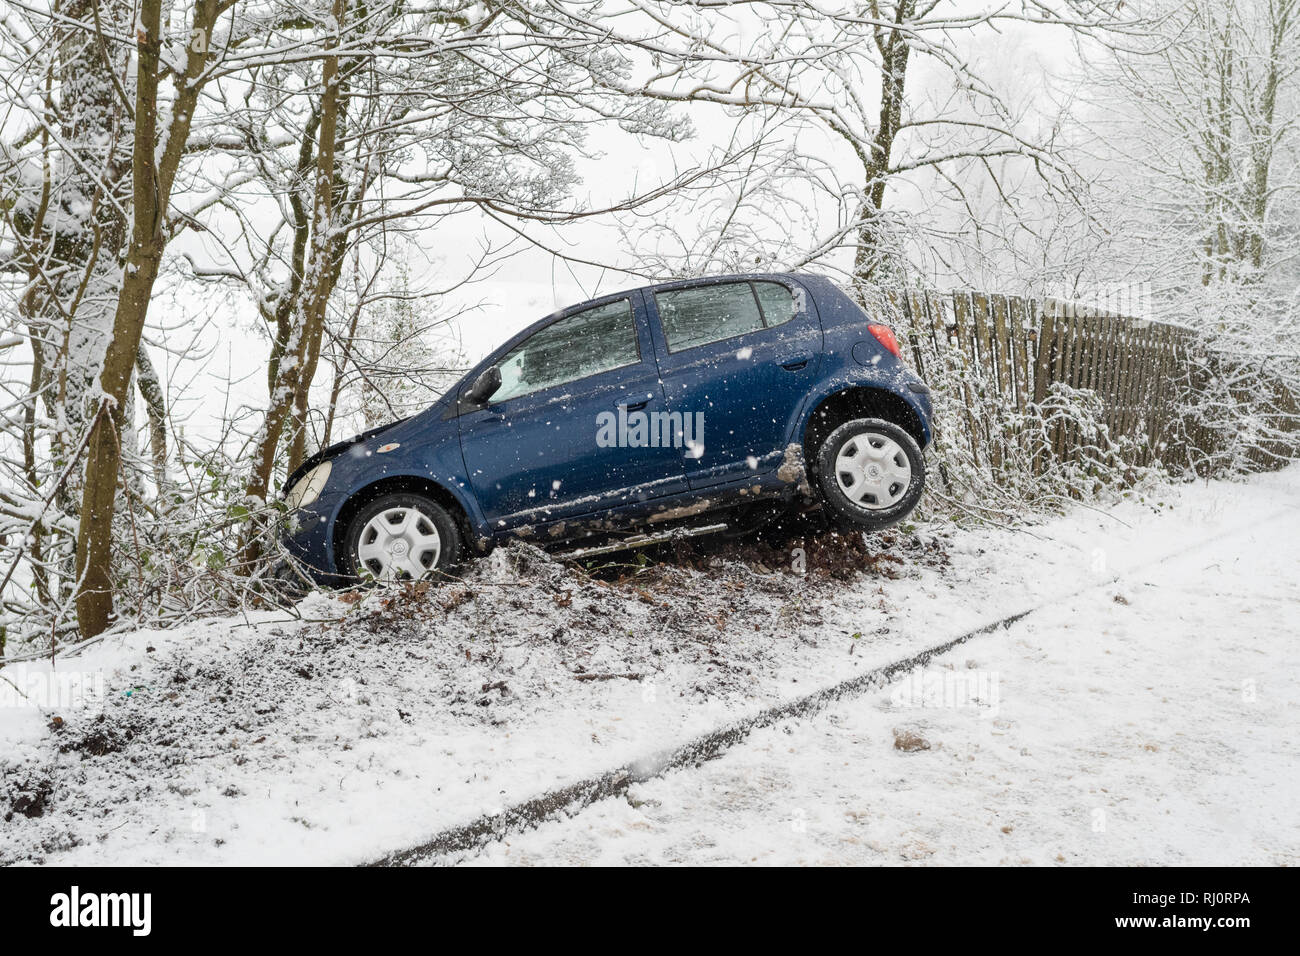 Auto Crash in den Schnee. Auto Dreher von der Straße im Schnee im Winter - Callander, Schottland, UK (Zustimmung durch unverletzt Fahrer des Autos gegeben) Stockfoto